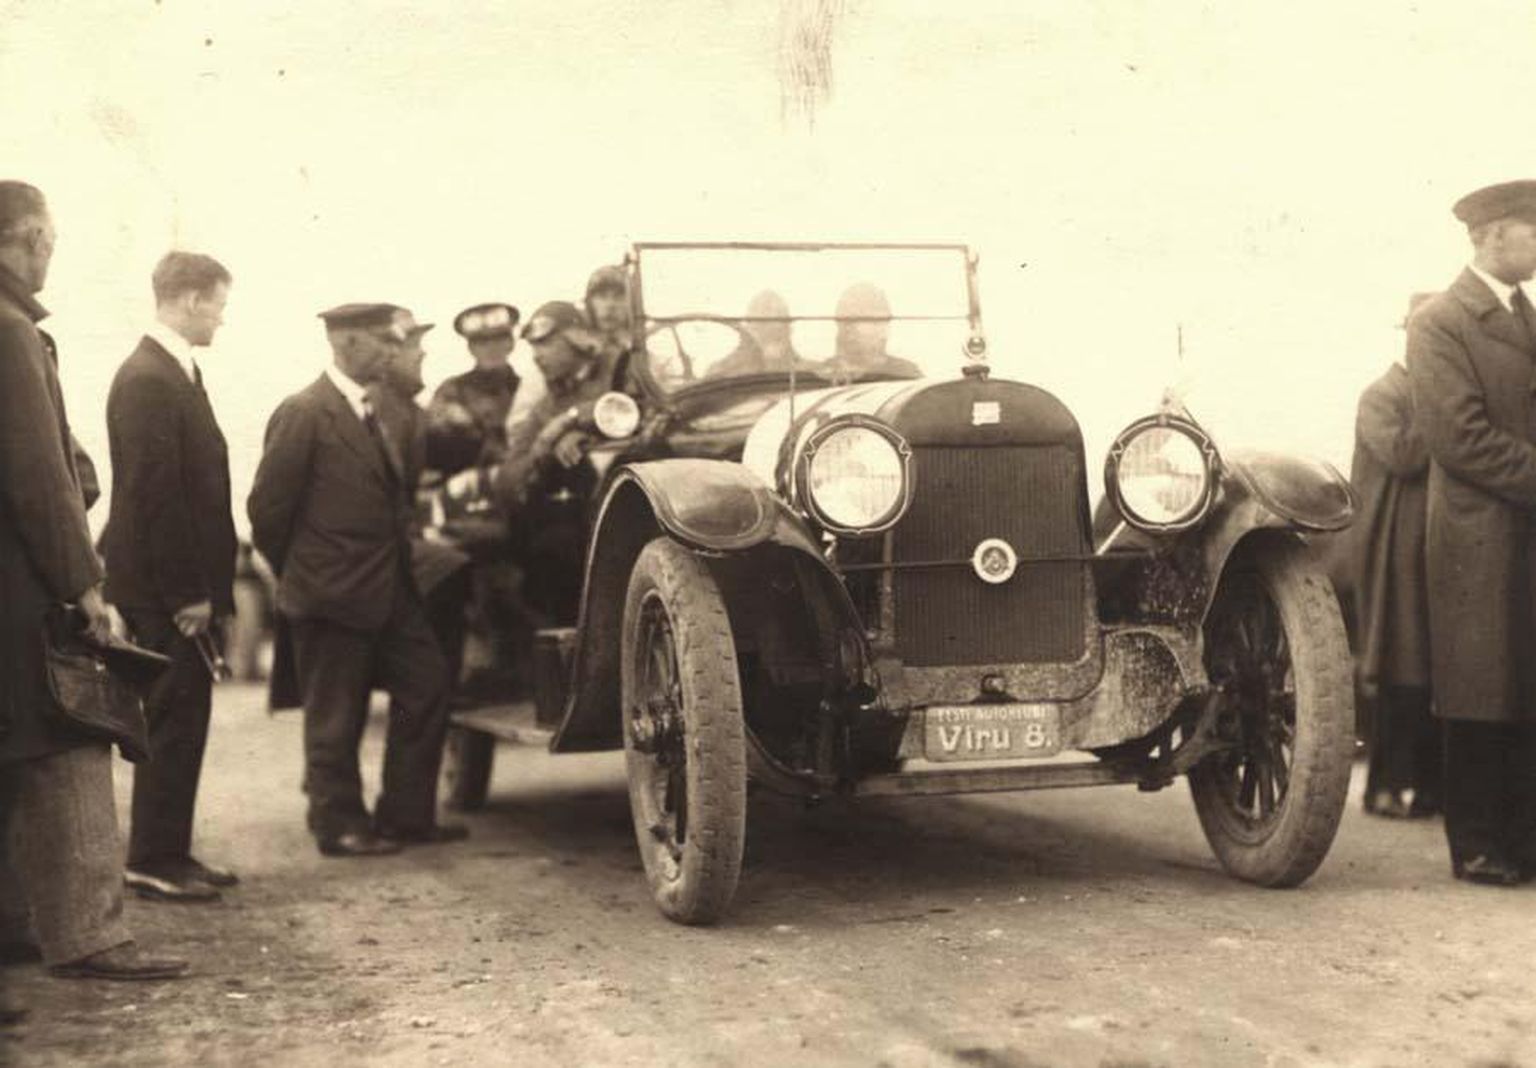 Nikolai Metsa juhitud Buick pikamaavõidusõidu Tallinn–Rakvere–Tallinn stardis
28. augustil 1927. aastal. Tagasiteel Tallinnasse paiskus see auto Päide veski juures kraavi kummuli. Sõitjad viga ei saanud, kuid koju tagasi tuli neil minna rongiga.